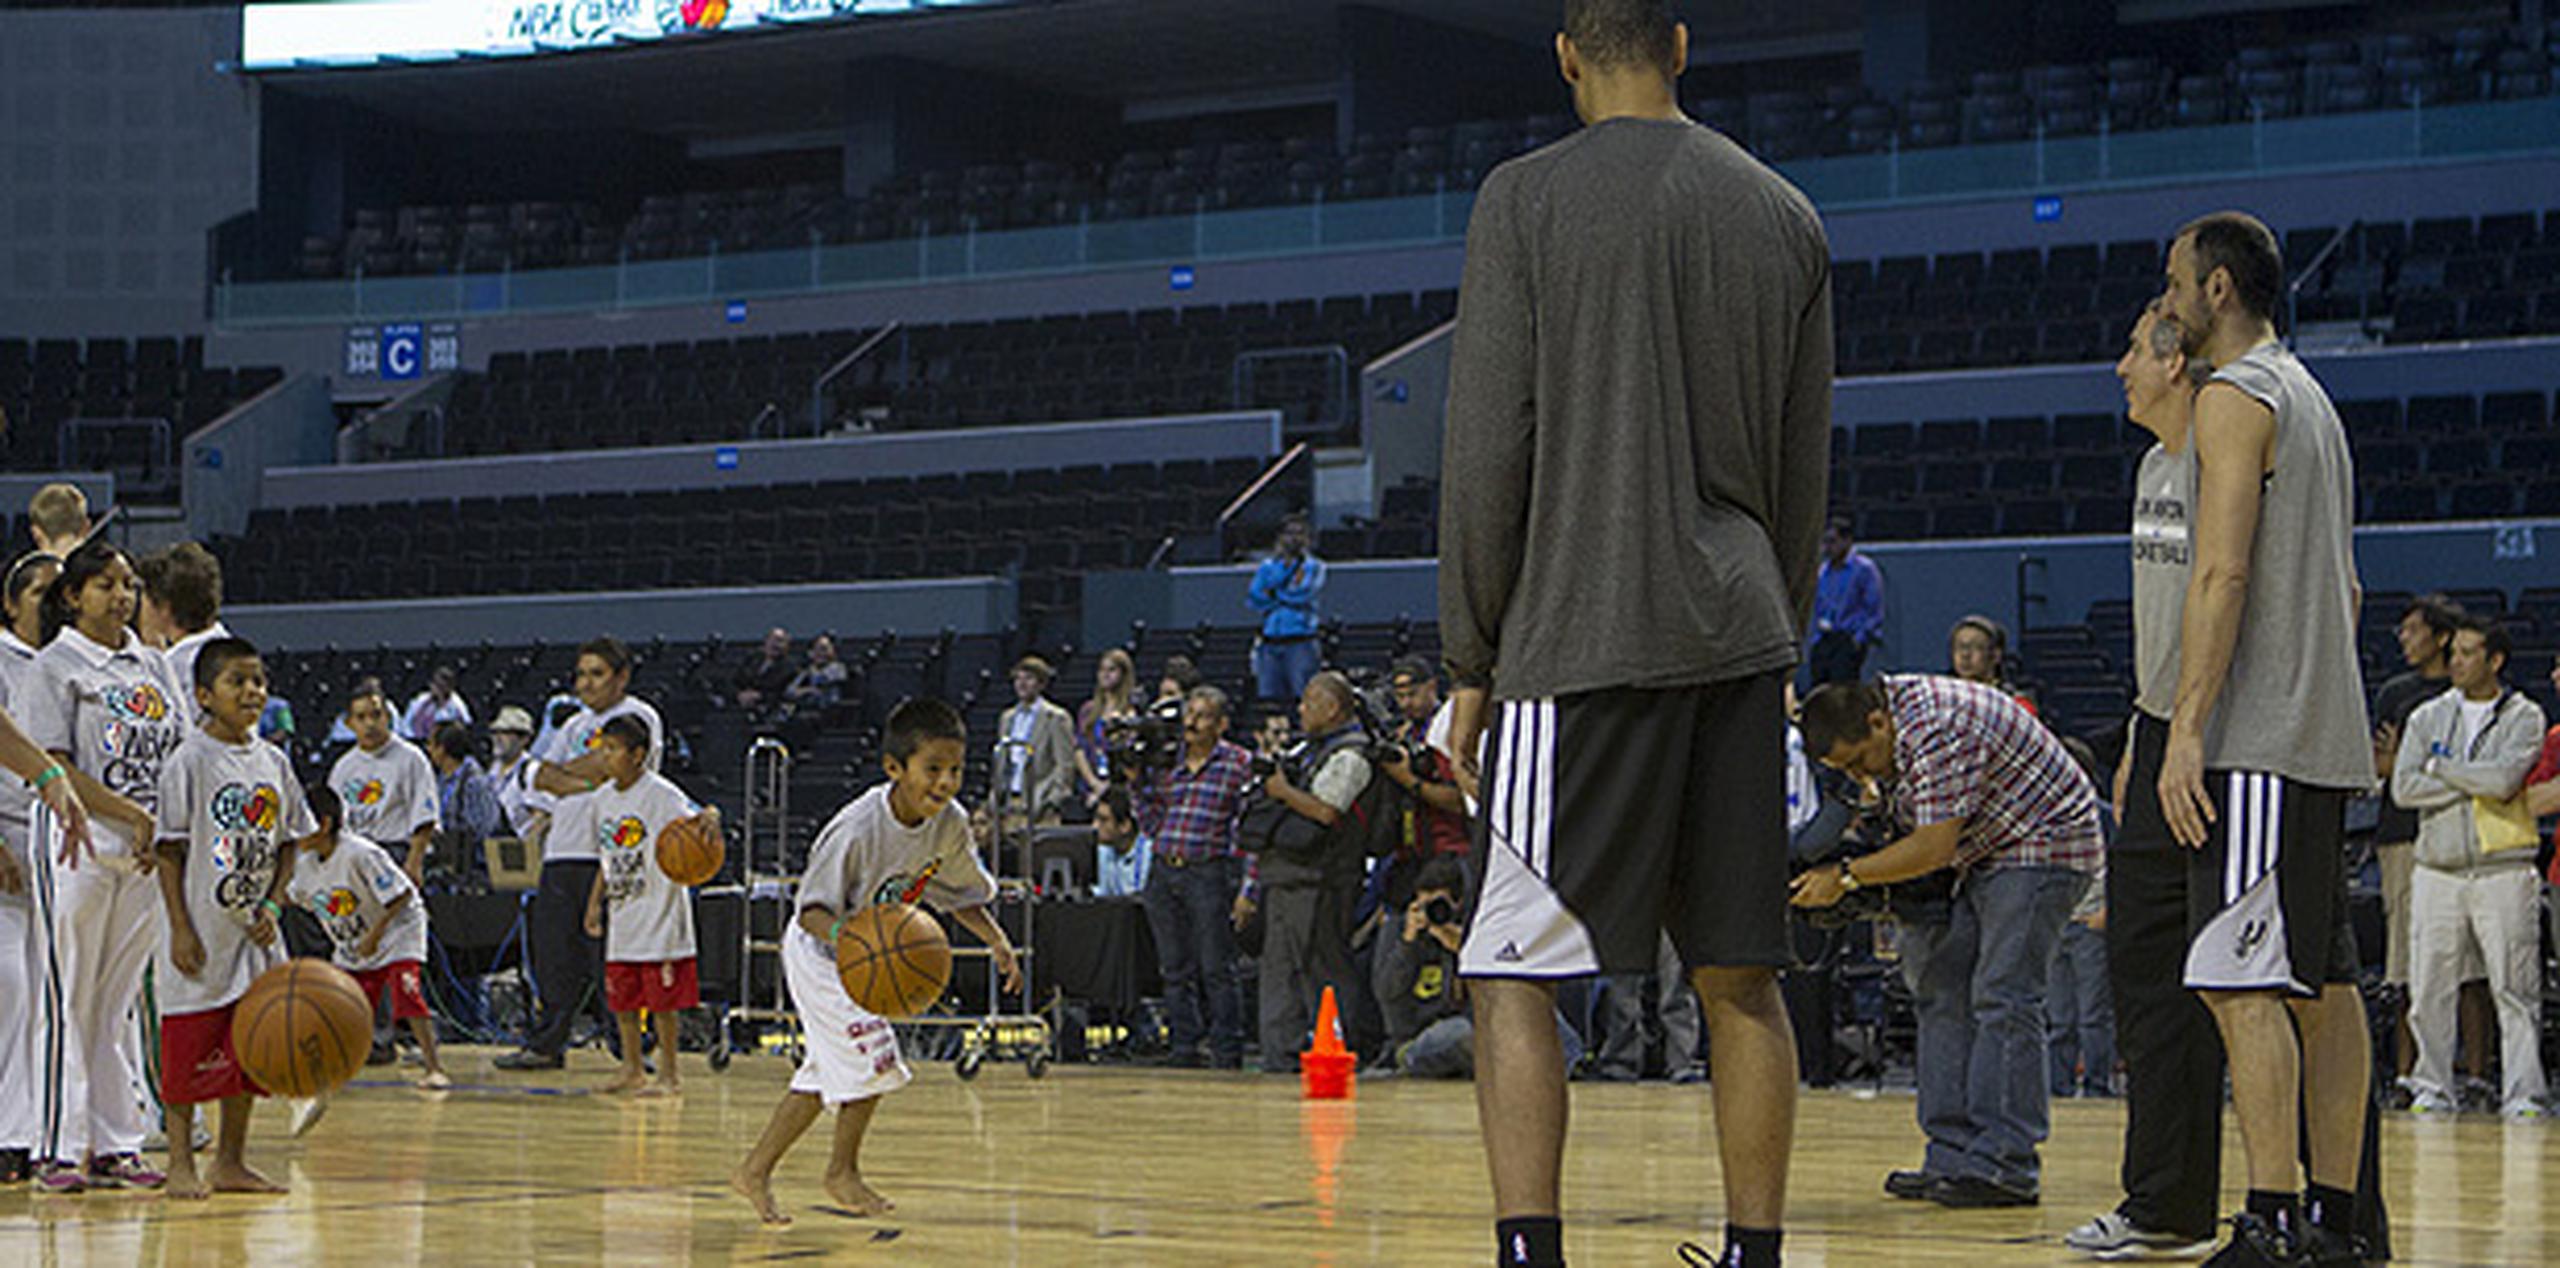 Jugadores de la NBA juegan descalzos contra niños indígenas - Primera Hora